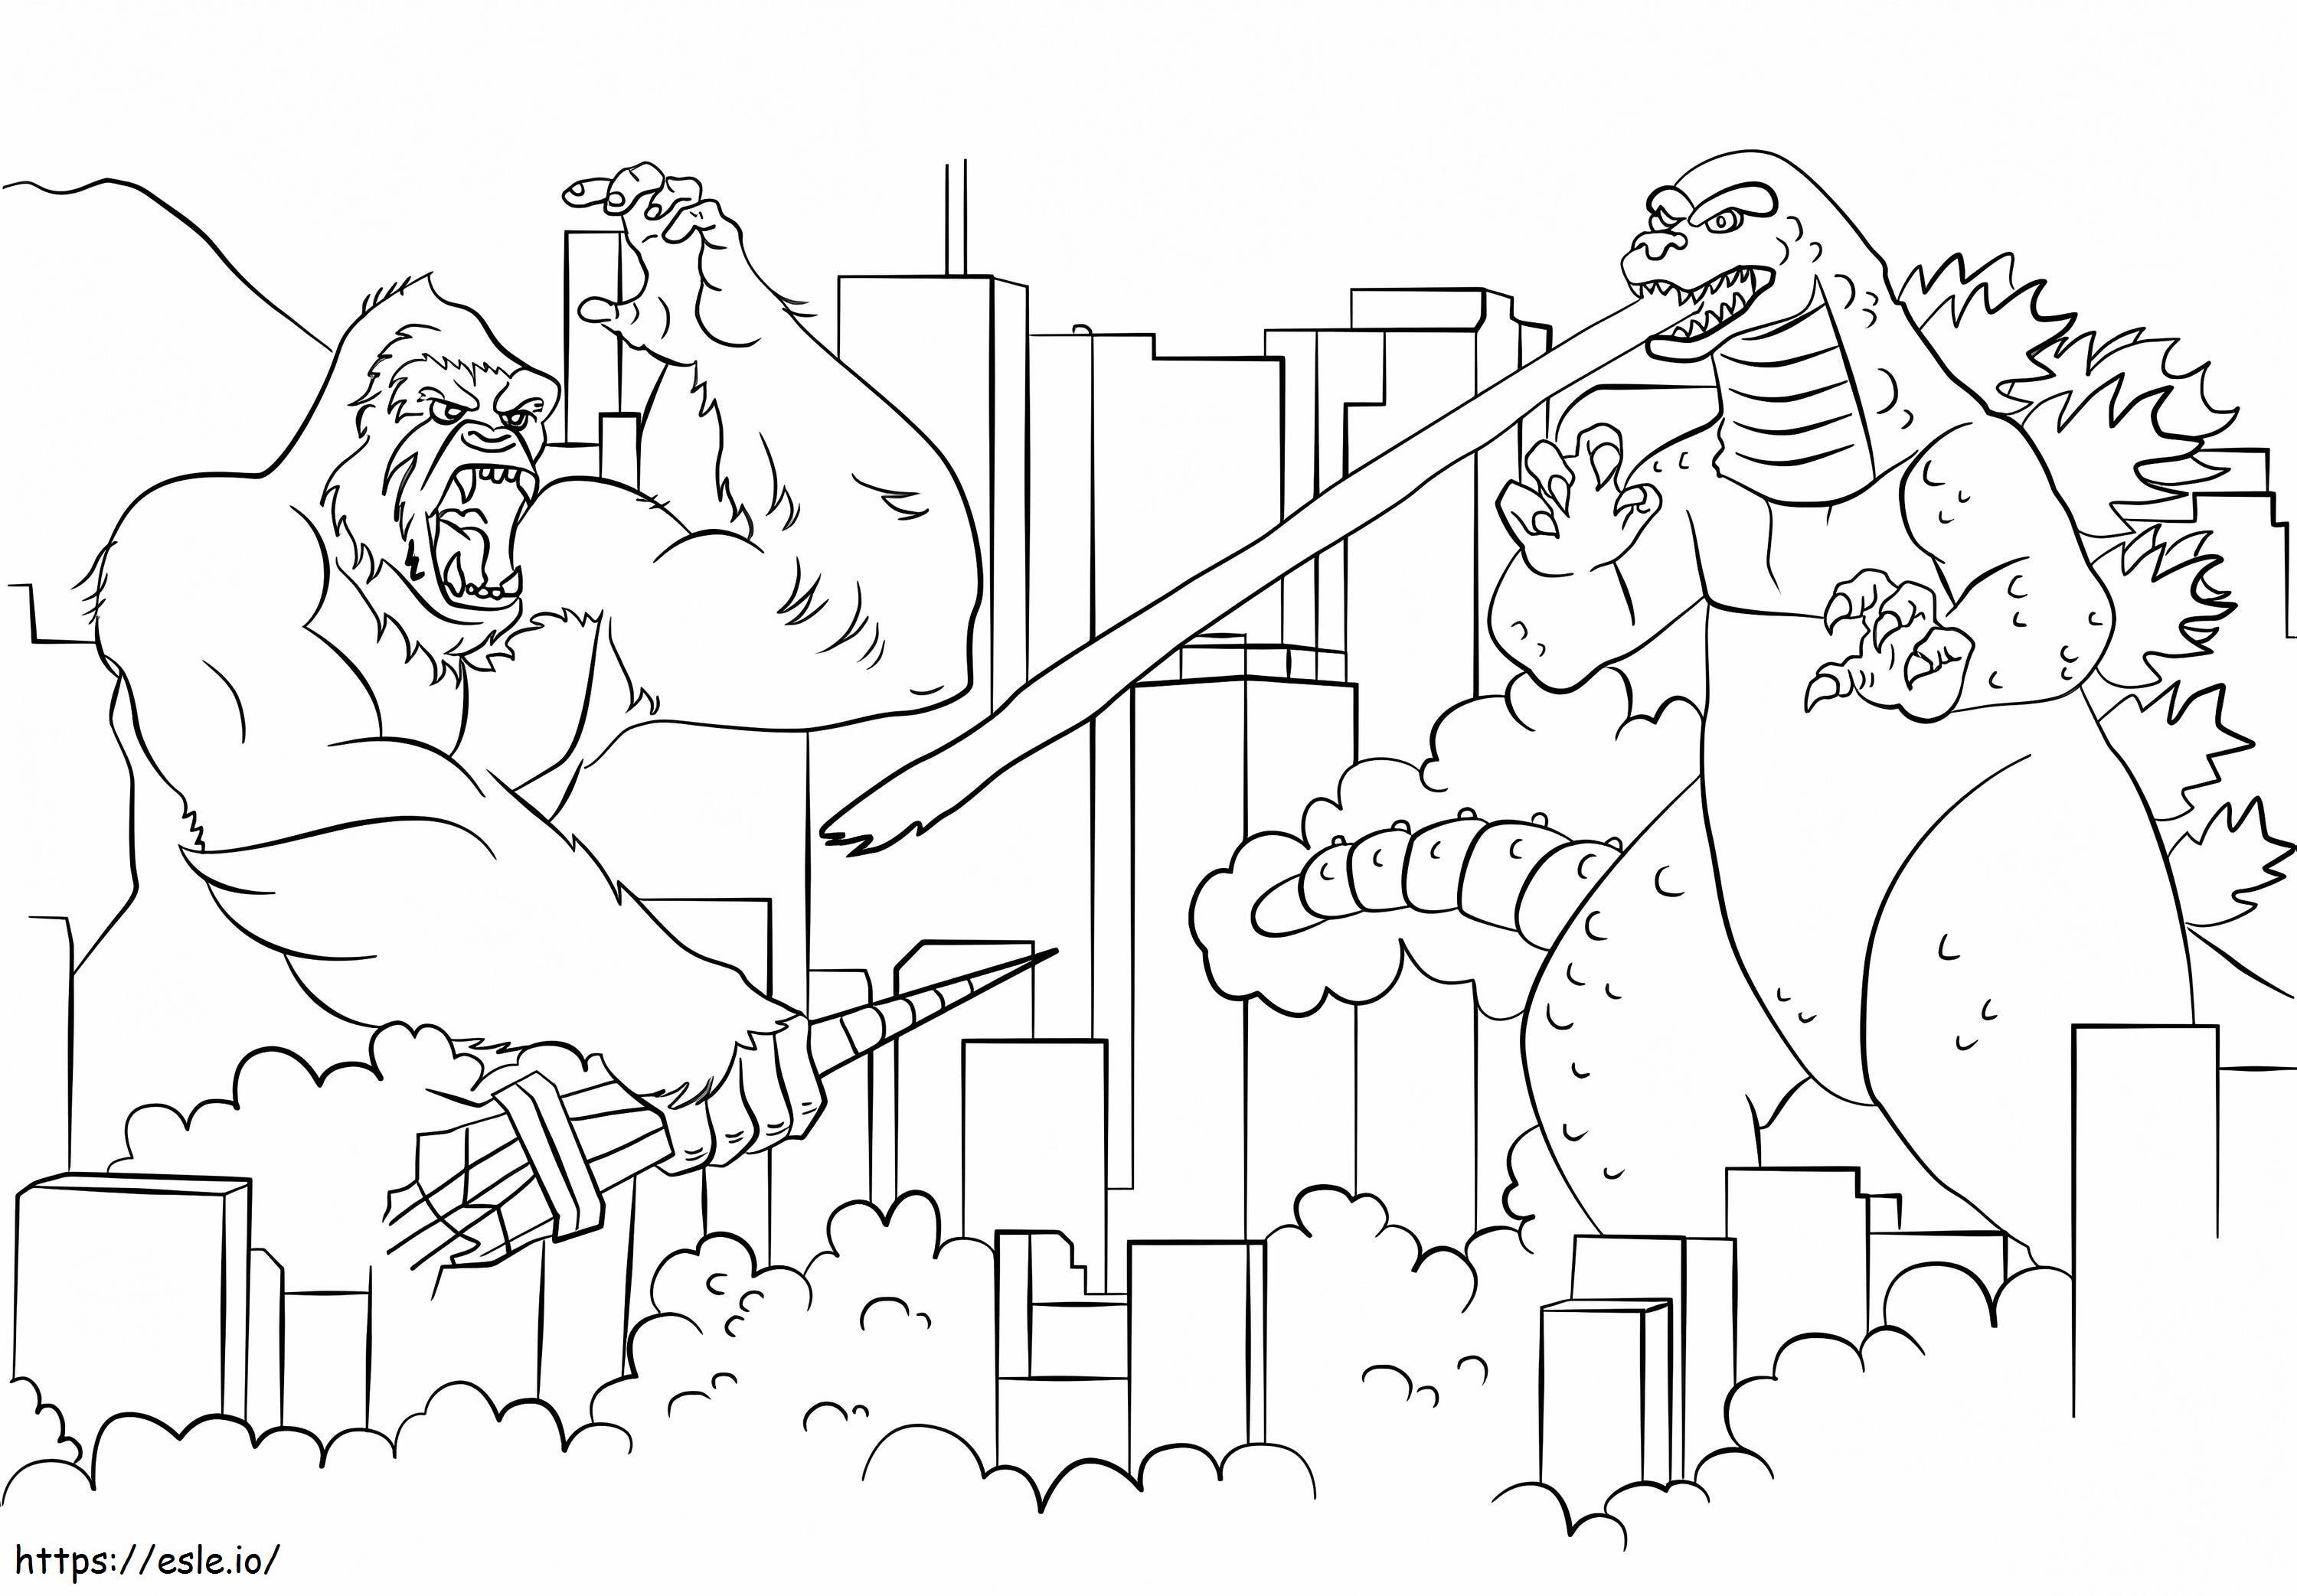 Godzilla Vs Kong 4 coloring page